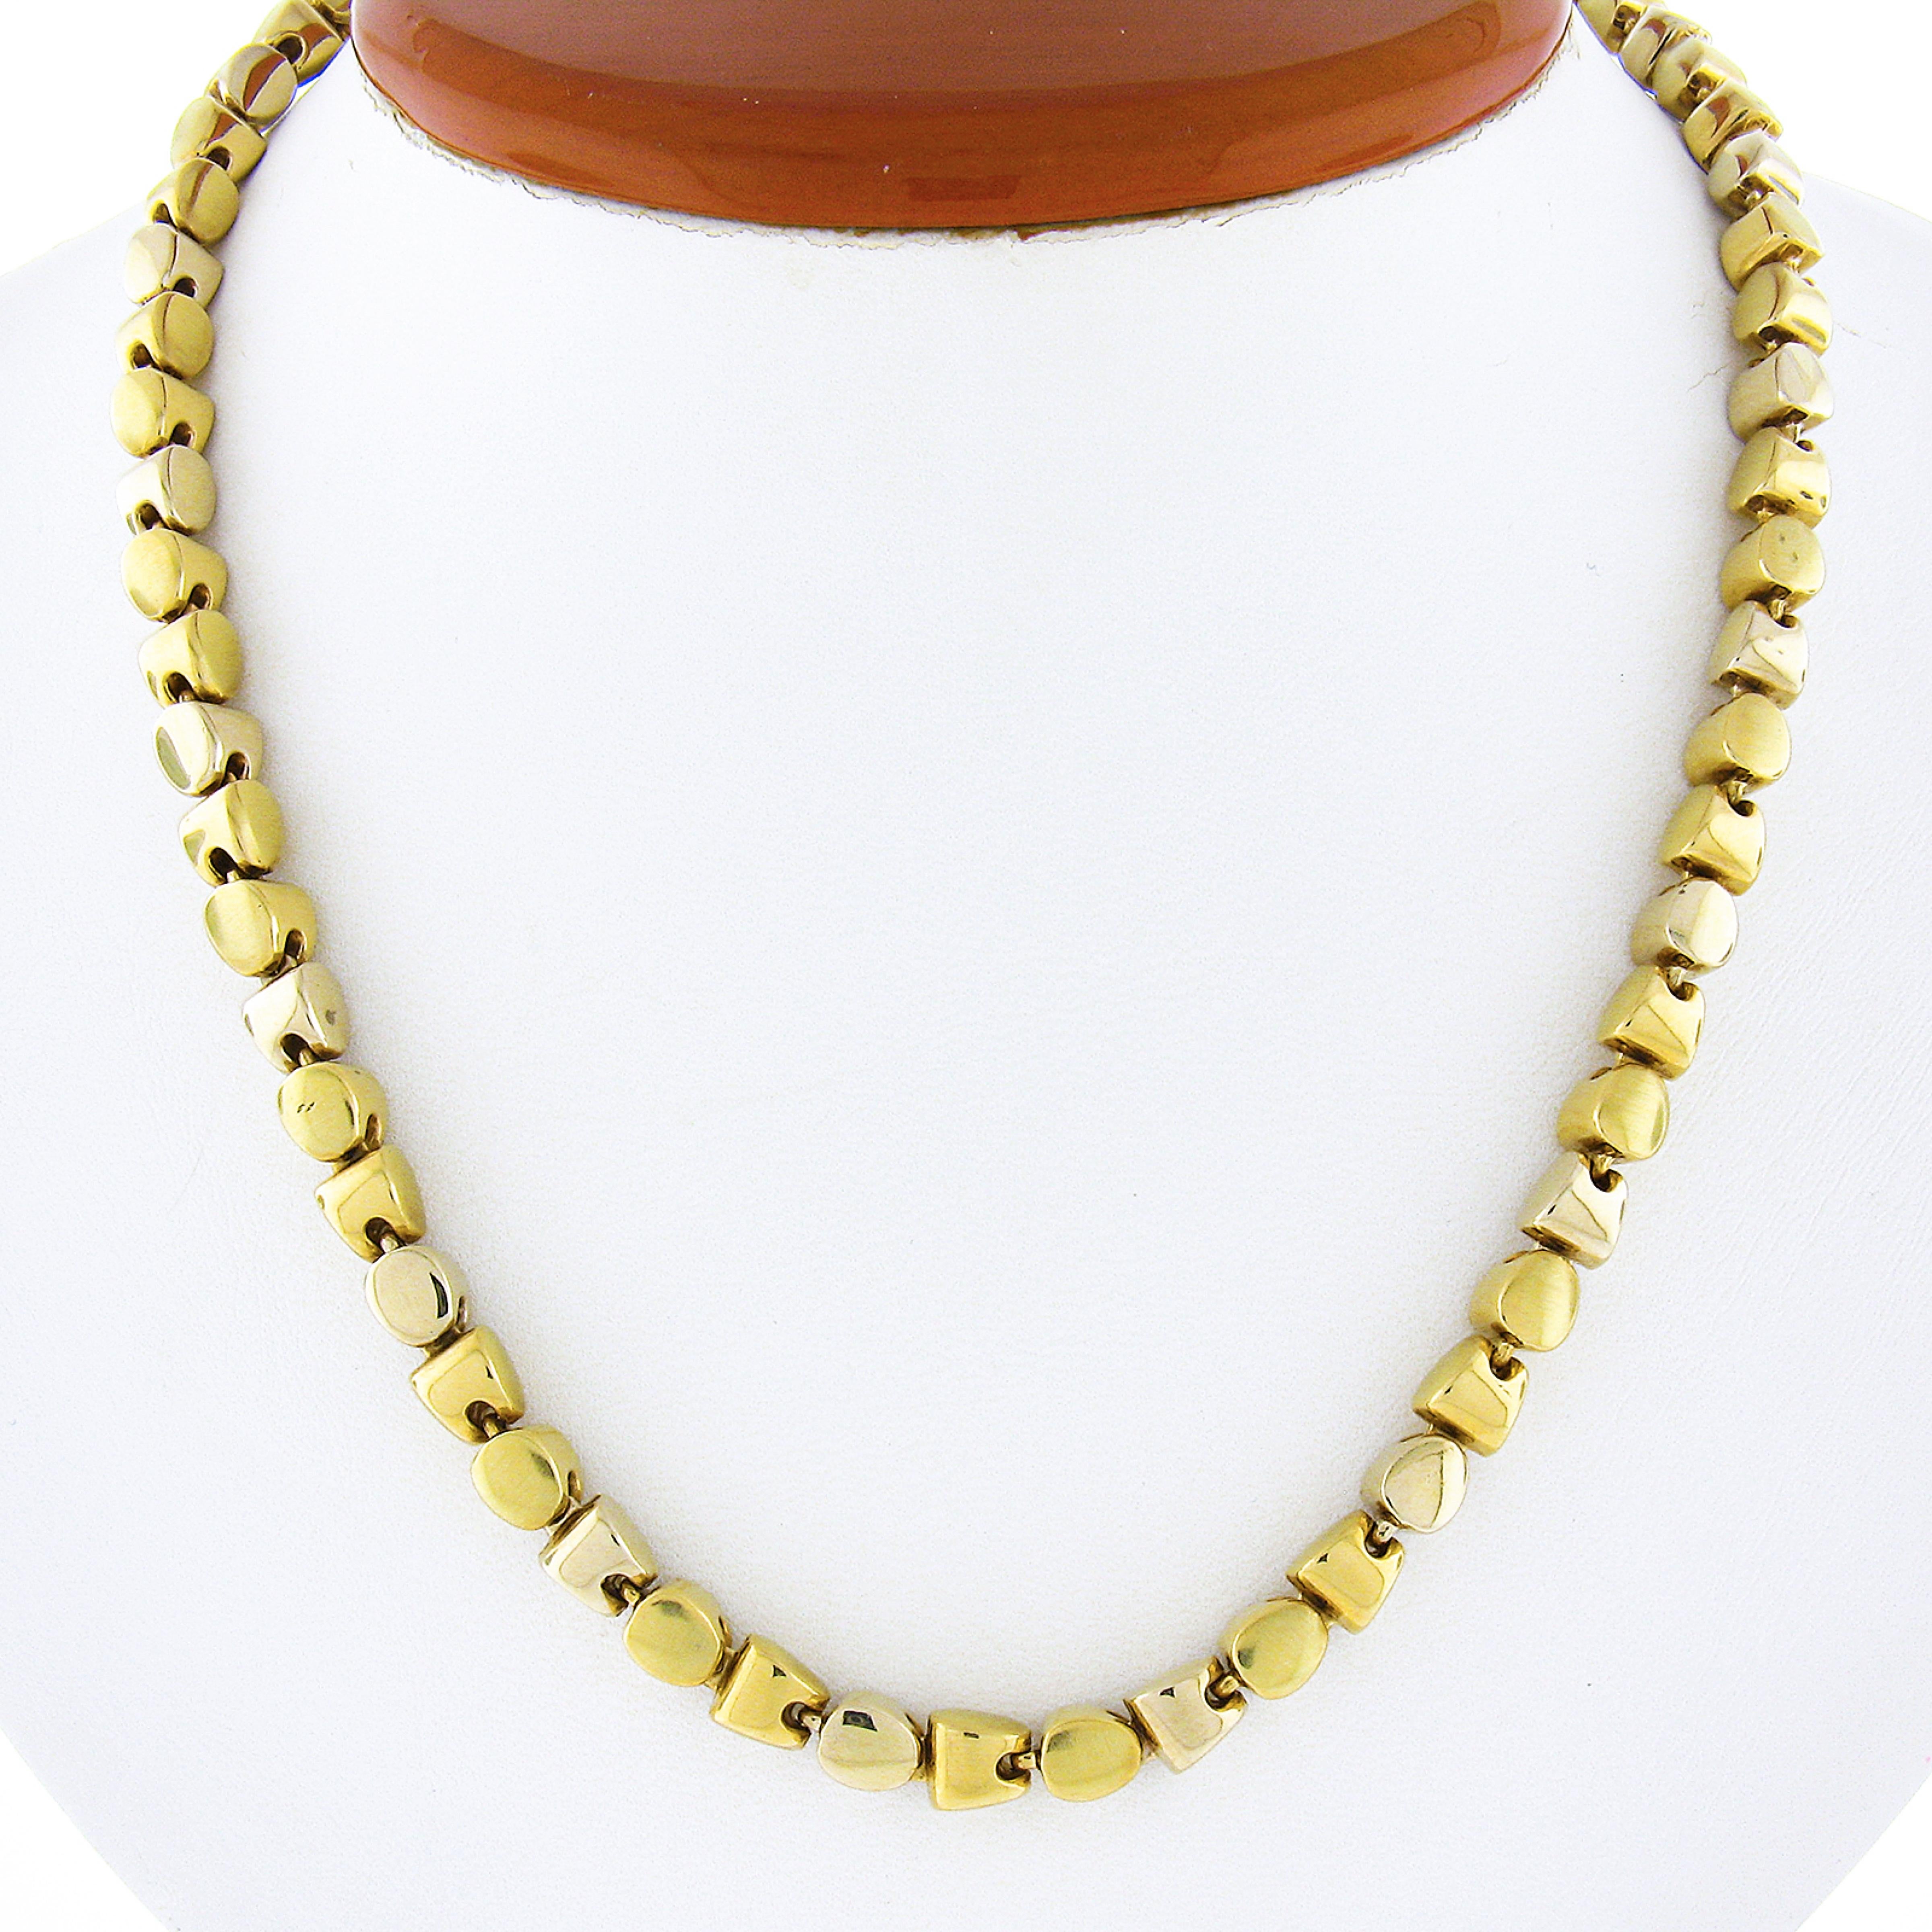 Nous vous présentons ici un collier unique fabriqué en or jaune 18 carats. Le collier présente des maillons géométriques simples et élégants qui donnent à cette pièce son aspect unique. Les maillons alternent avec une finition polie et une